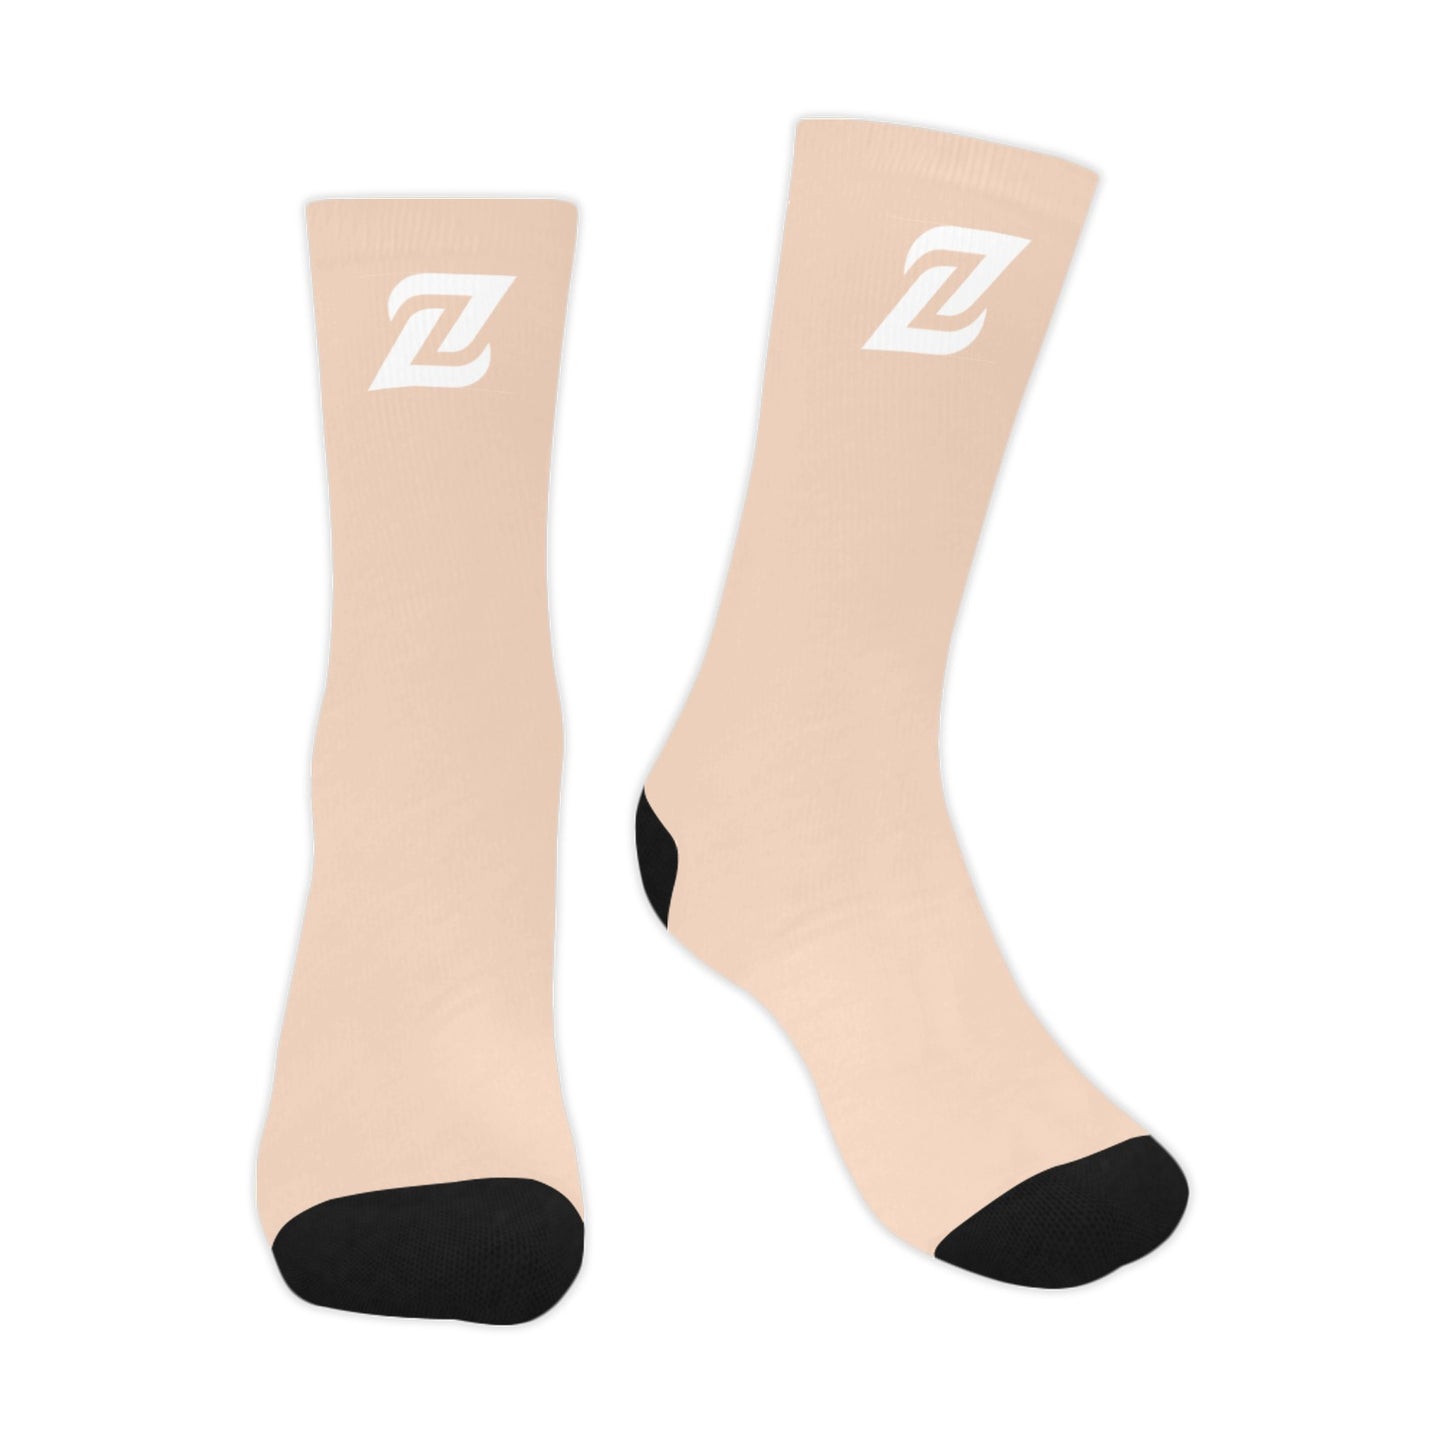 Zen Socks - Nude Light